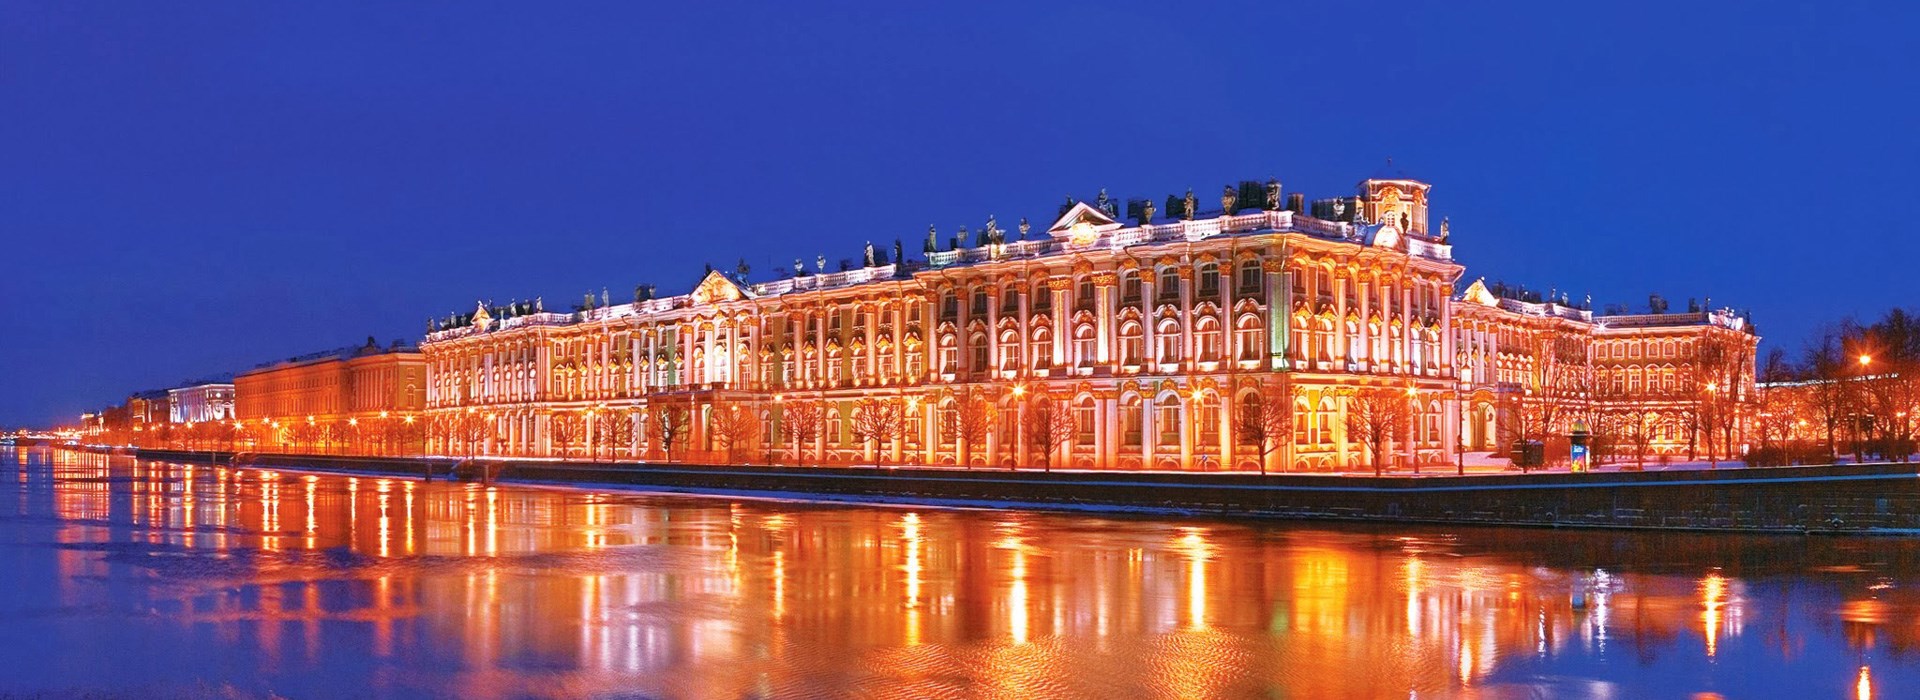 Visiter Le musée de l'Ermitage - Russie